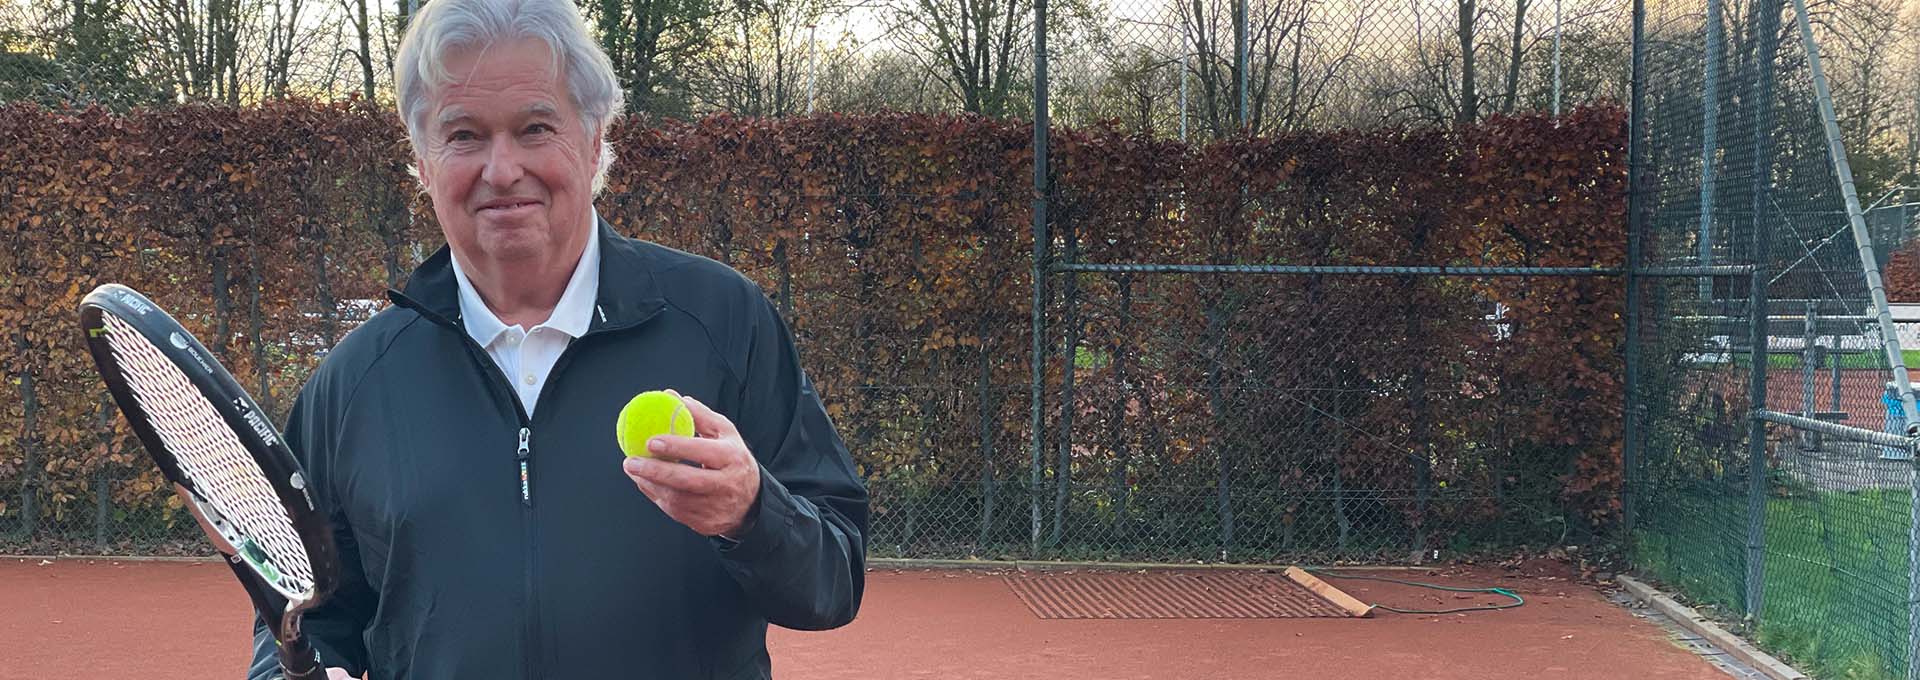 Utente di apparecchi acustici Bernafon Alpha (uomo) con pallina da tennis e racchetta in mano sul campo che guarda la telecamera pronto per giocare